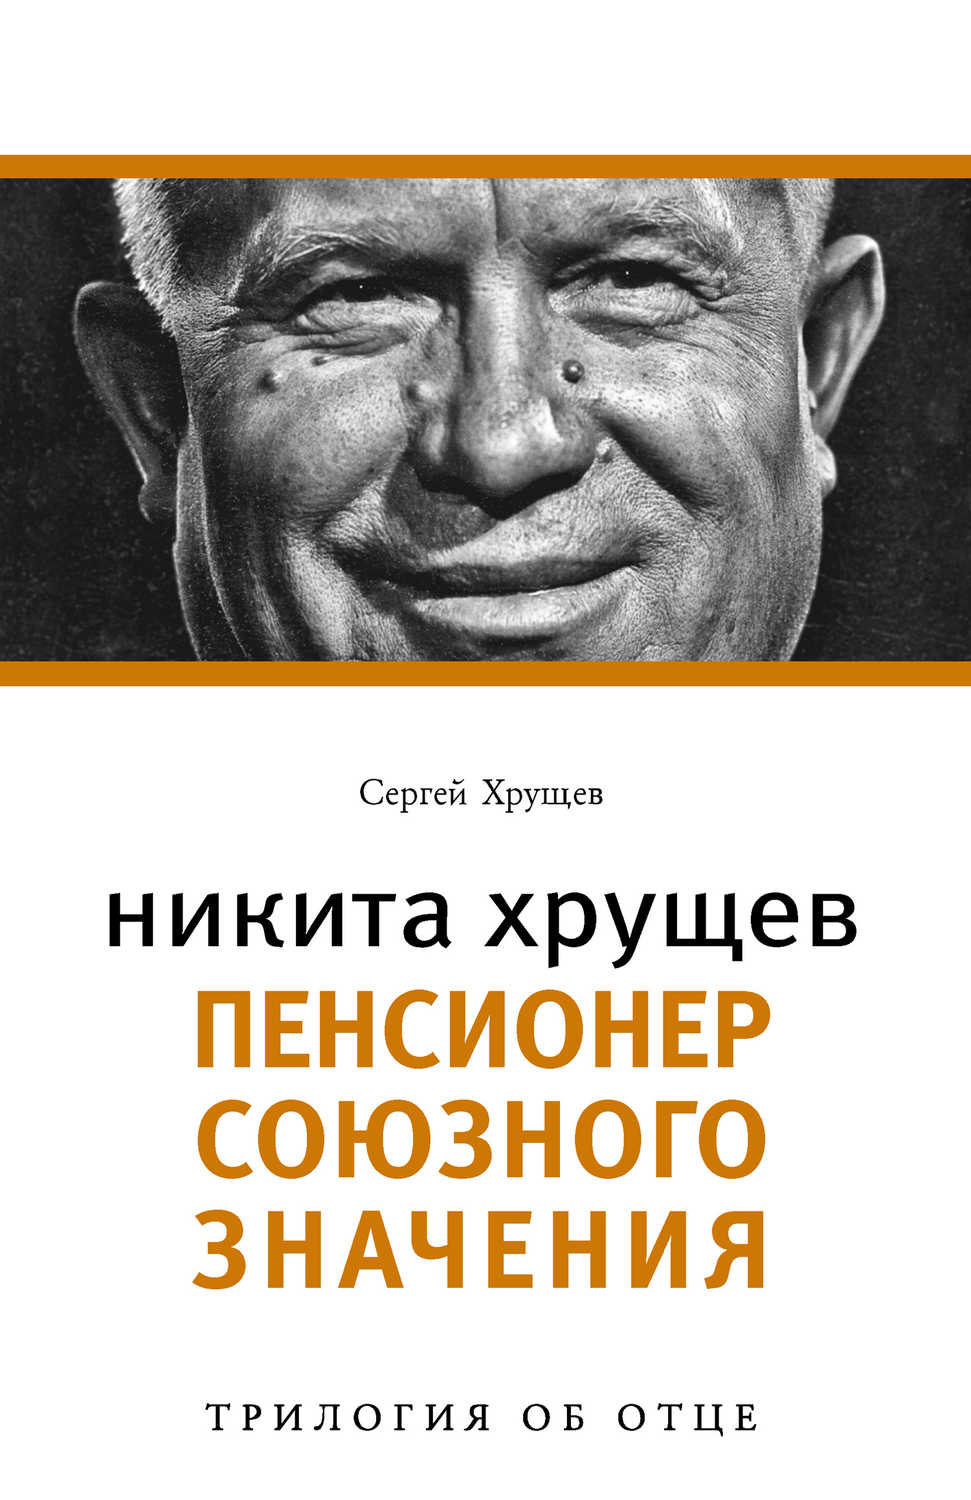 Хрущев Сергей Никитович - «Никита Хрущев. Пенсионер союзного значения»